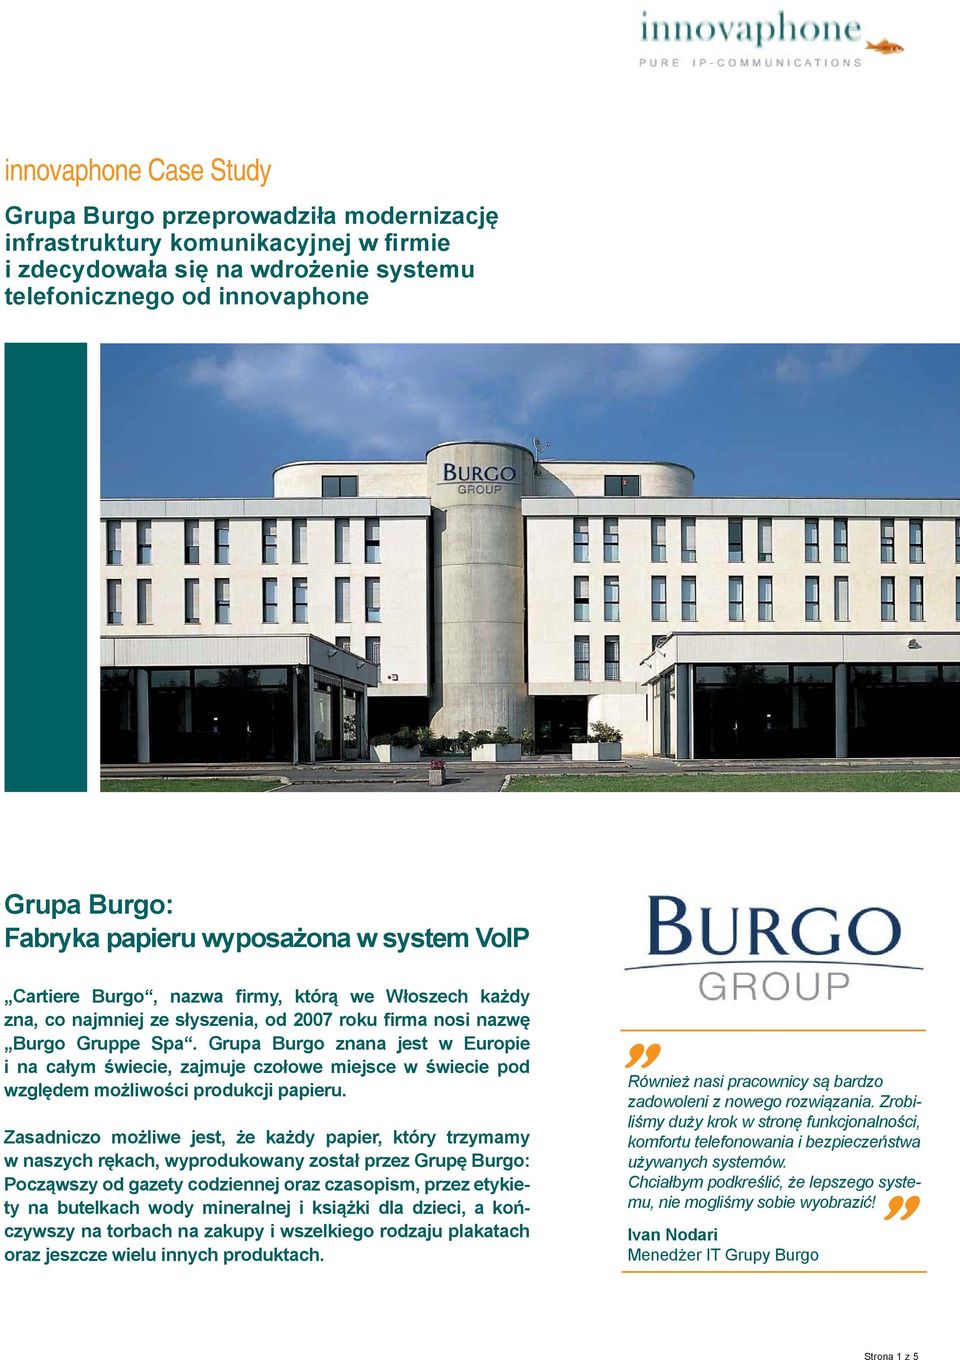 Grupa Burgo znana jest w Europie i na całym świecie, zajmuje czołowe miejsce w świecie pod względem możliwości produkcji papieru.